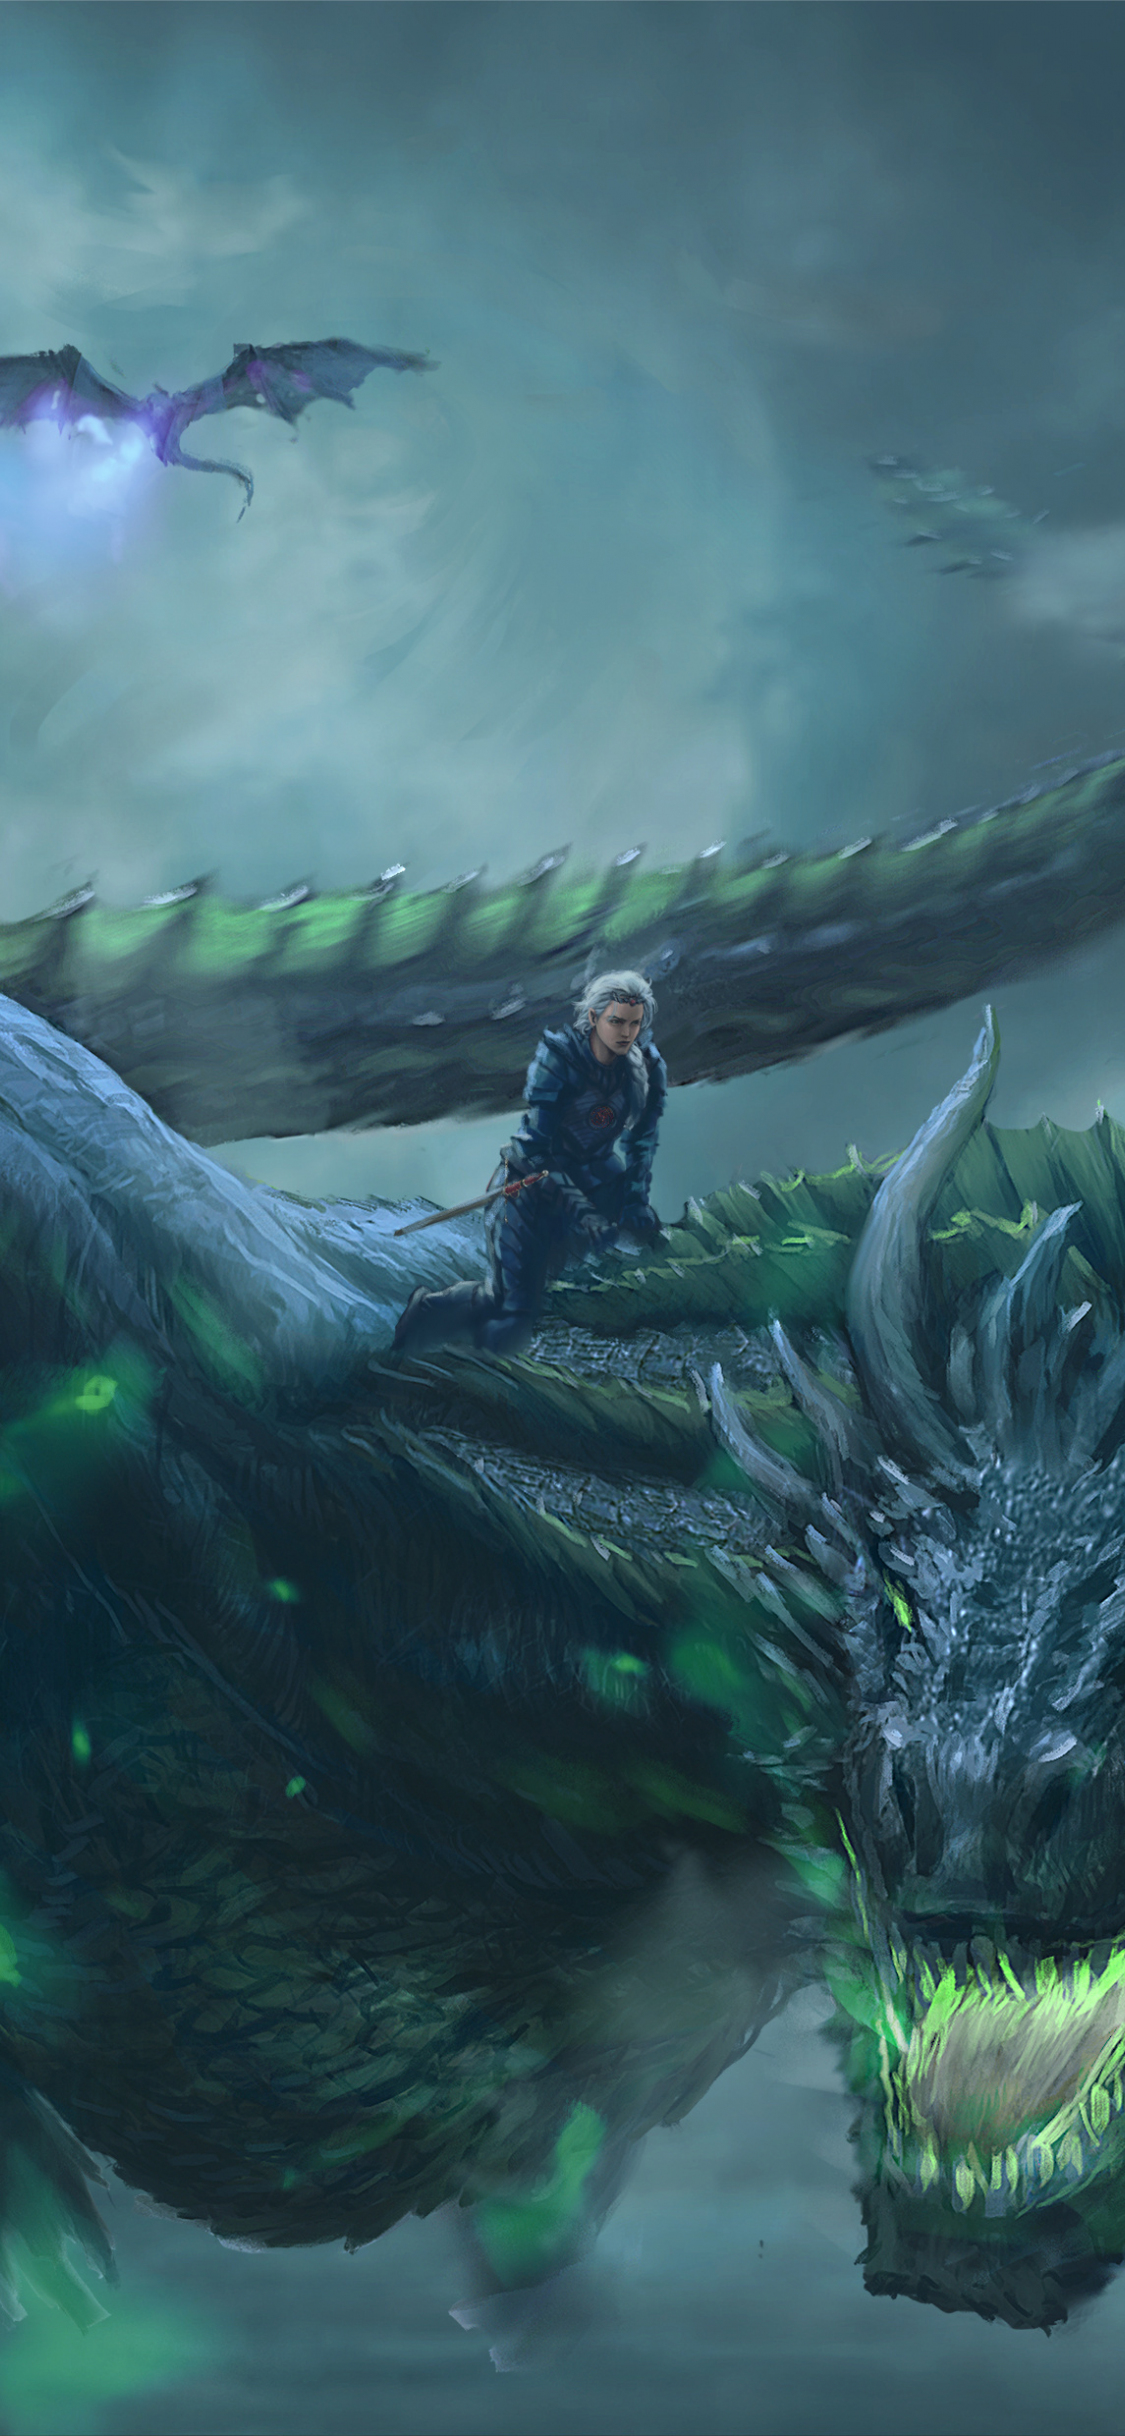 Download 1125x2436 Wallpaper Daenerys Targaryen Dragon Ride